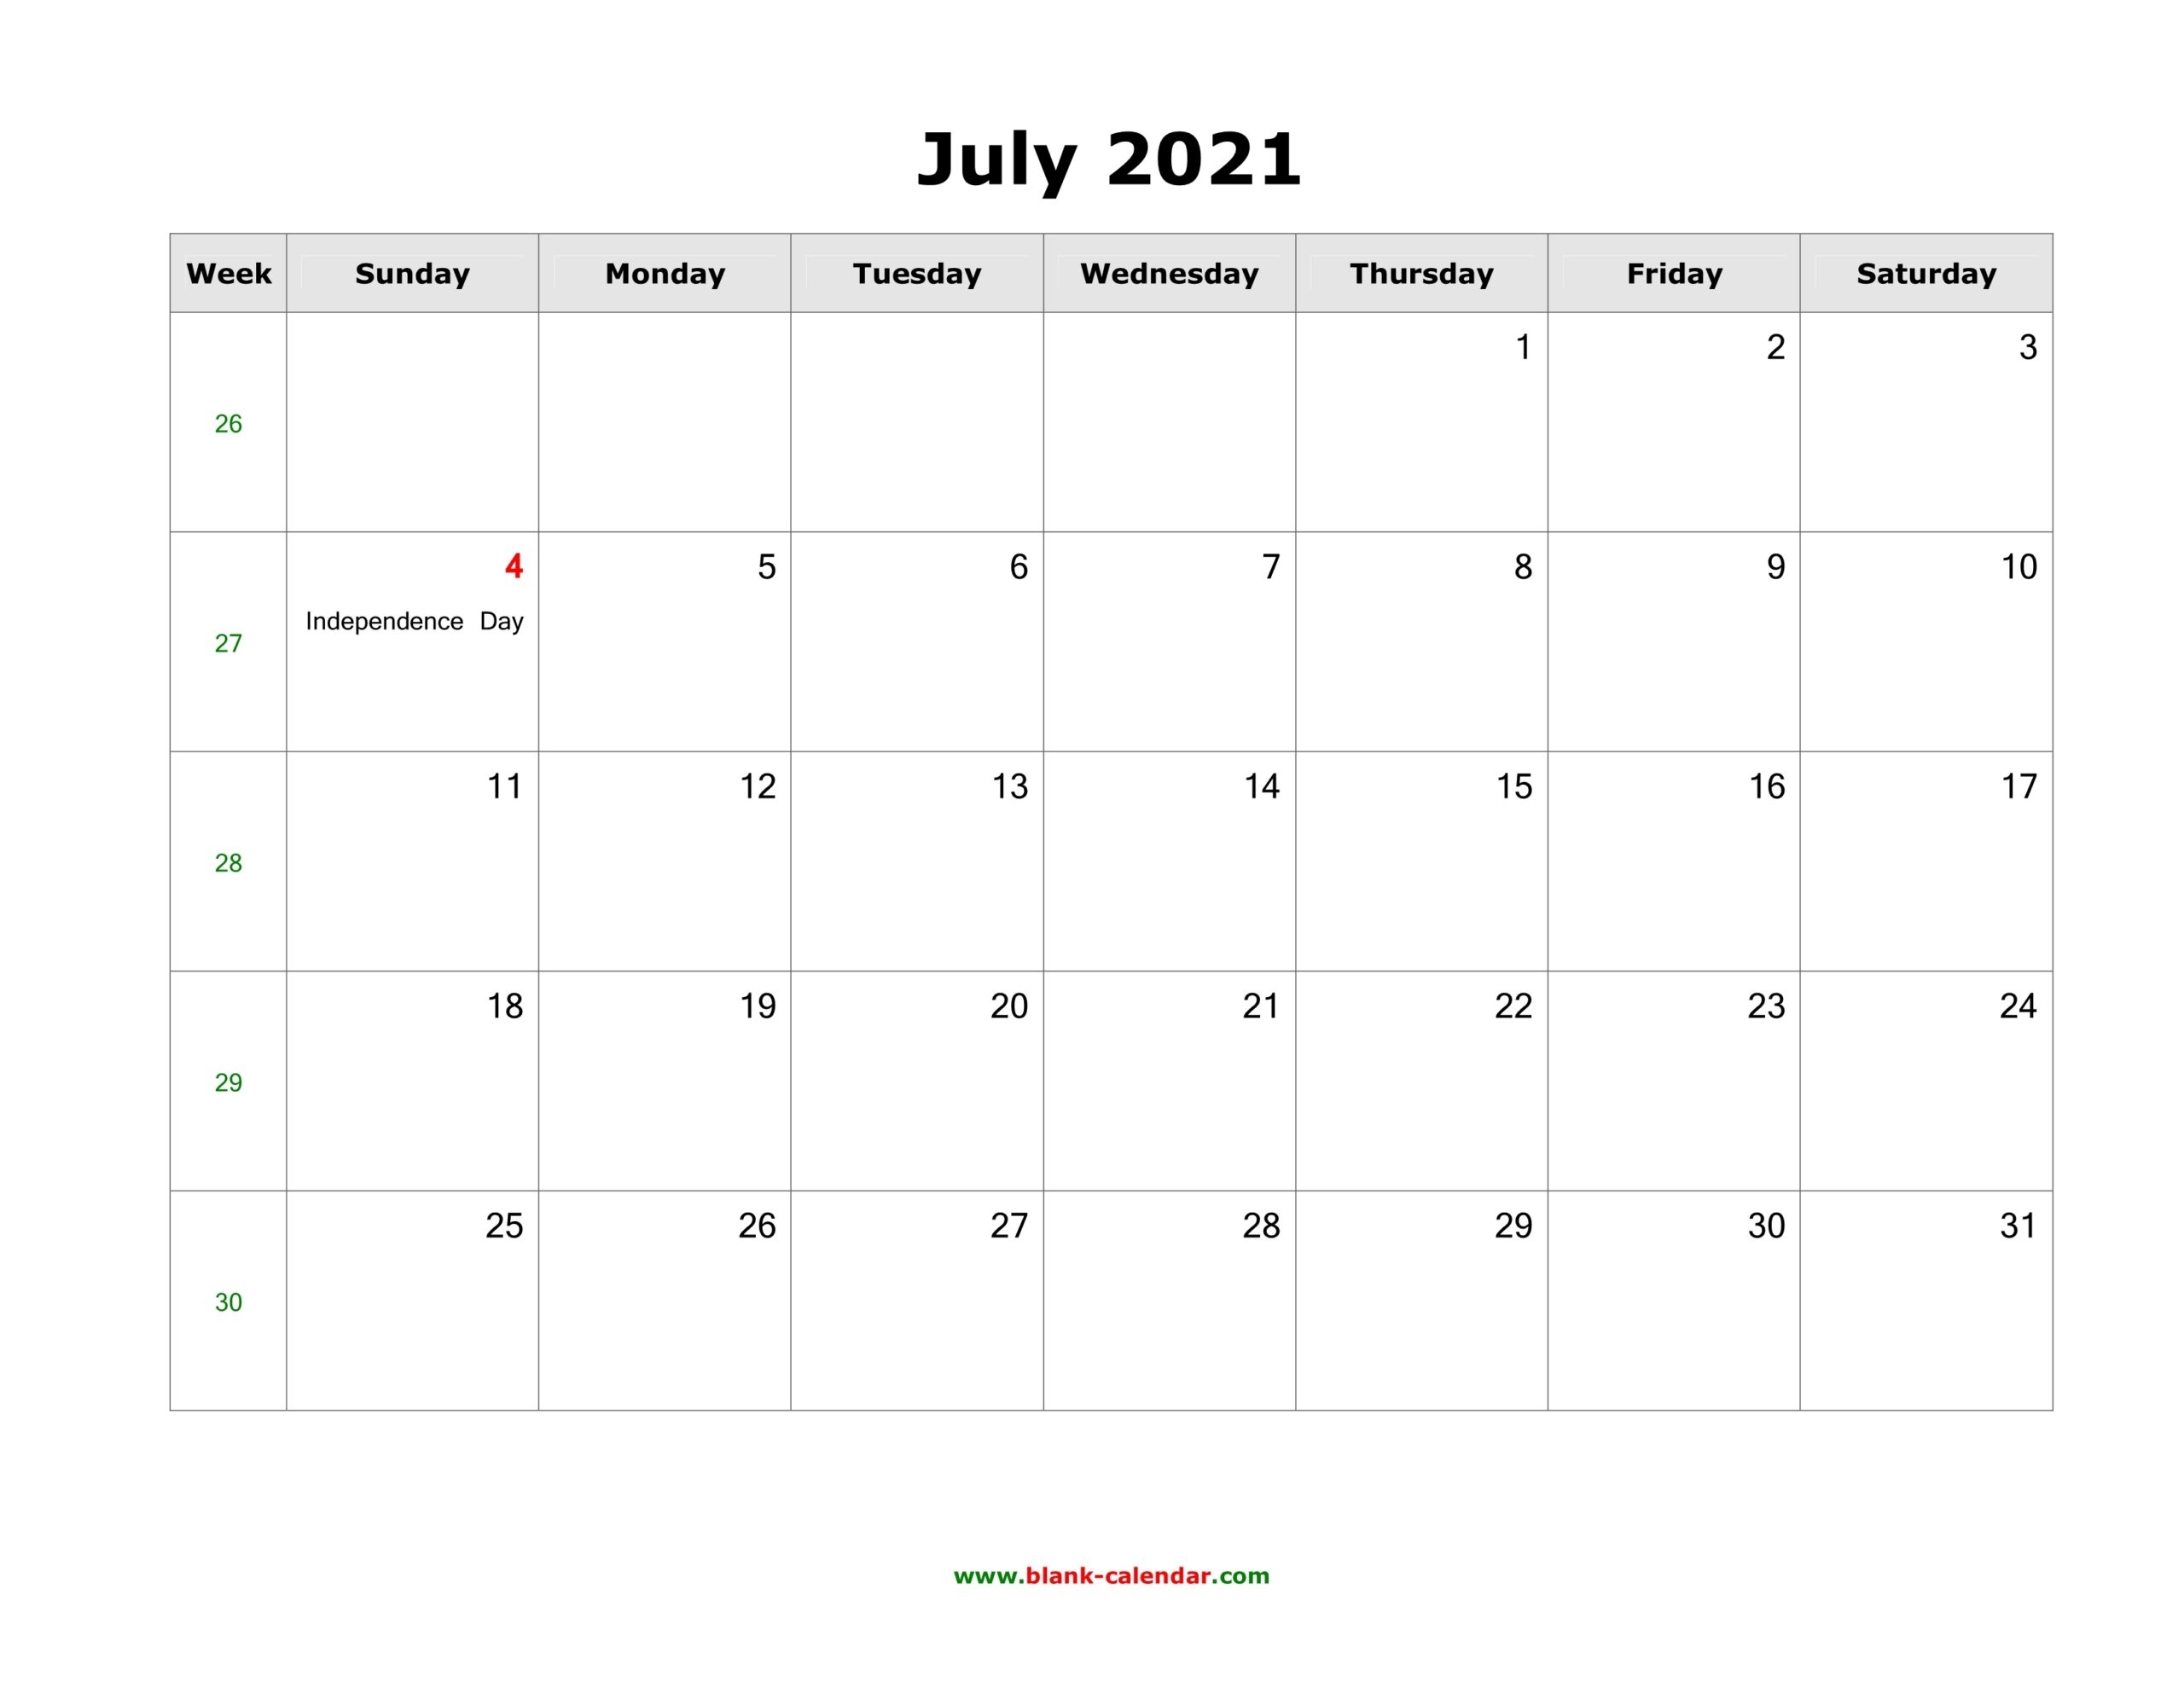 June 2021 Printable Calendar In Pdf, Word, Excel - Calendar End - 2020 Calendar Printable June Calendar Of 2021